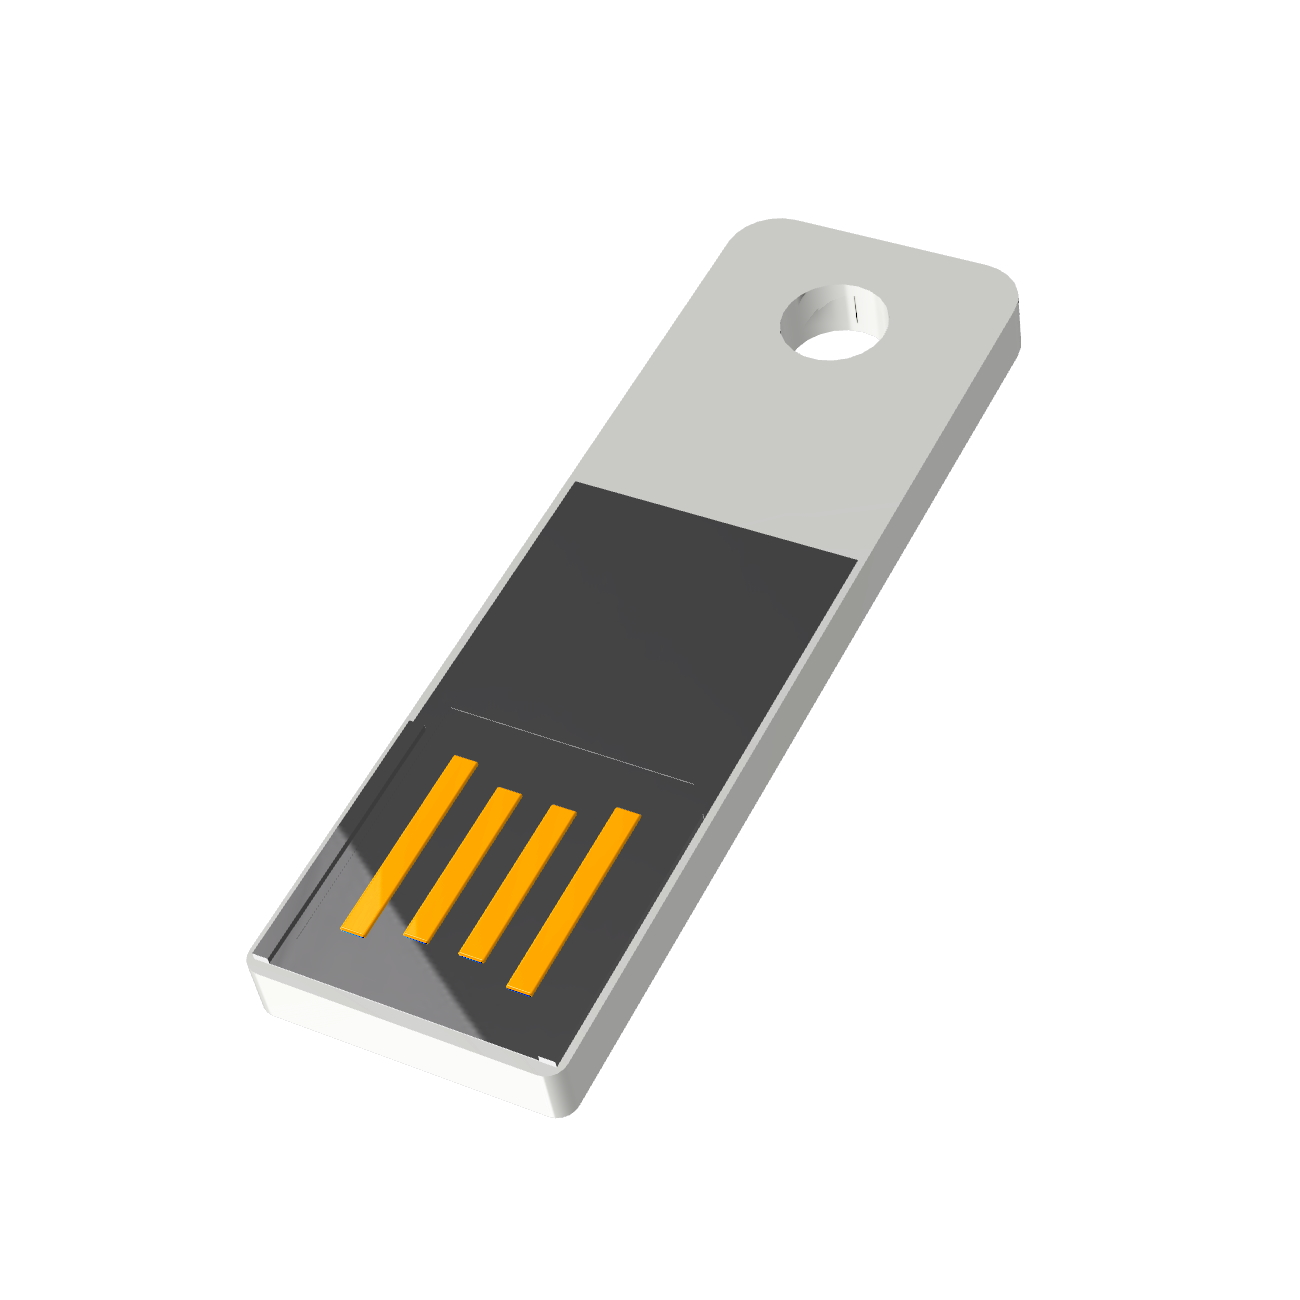 USB GERMANY Mini USB-Stick 2 Slim GB) ® (Weiß